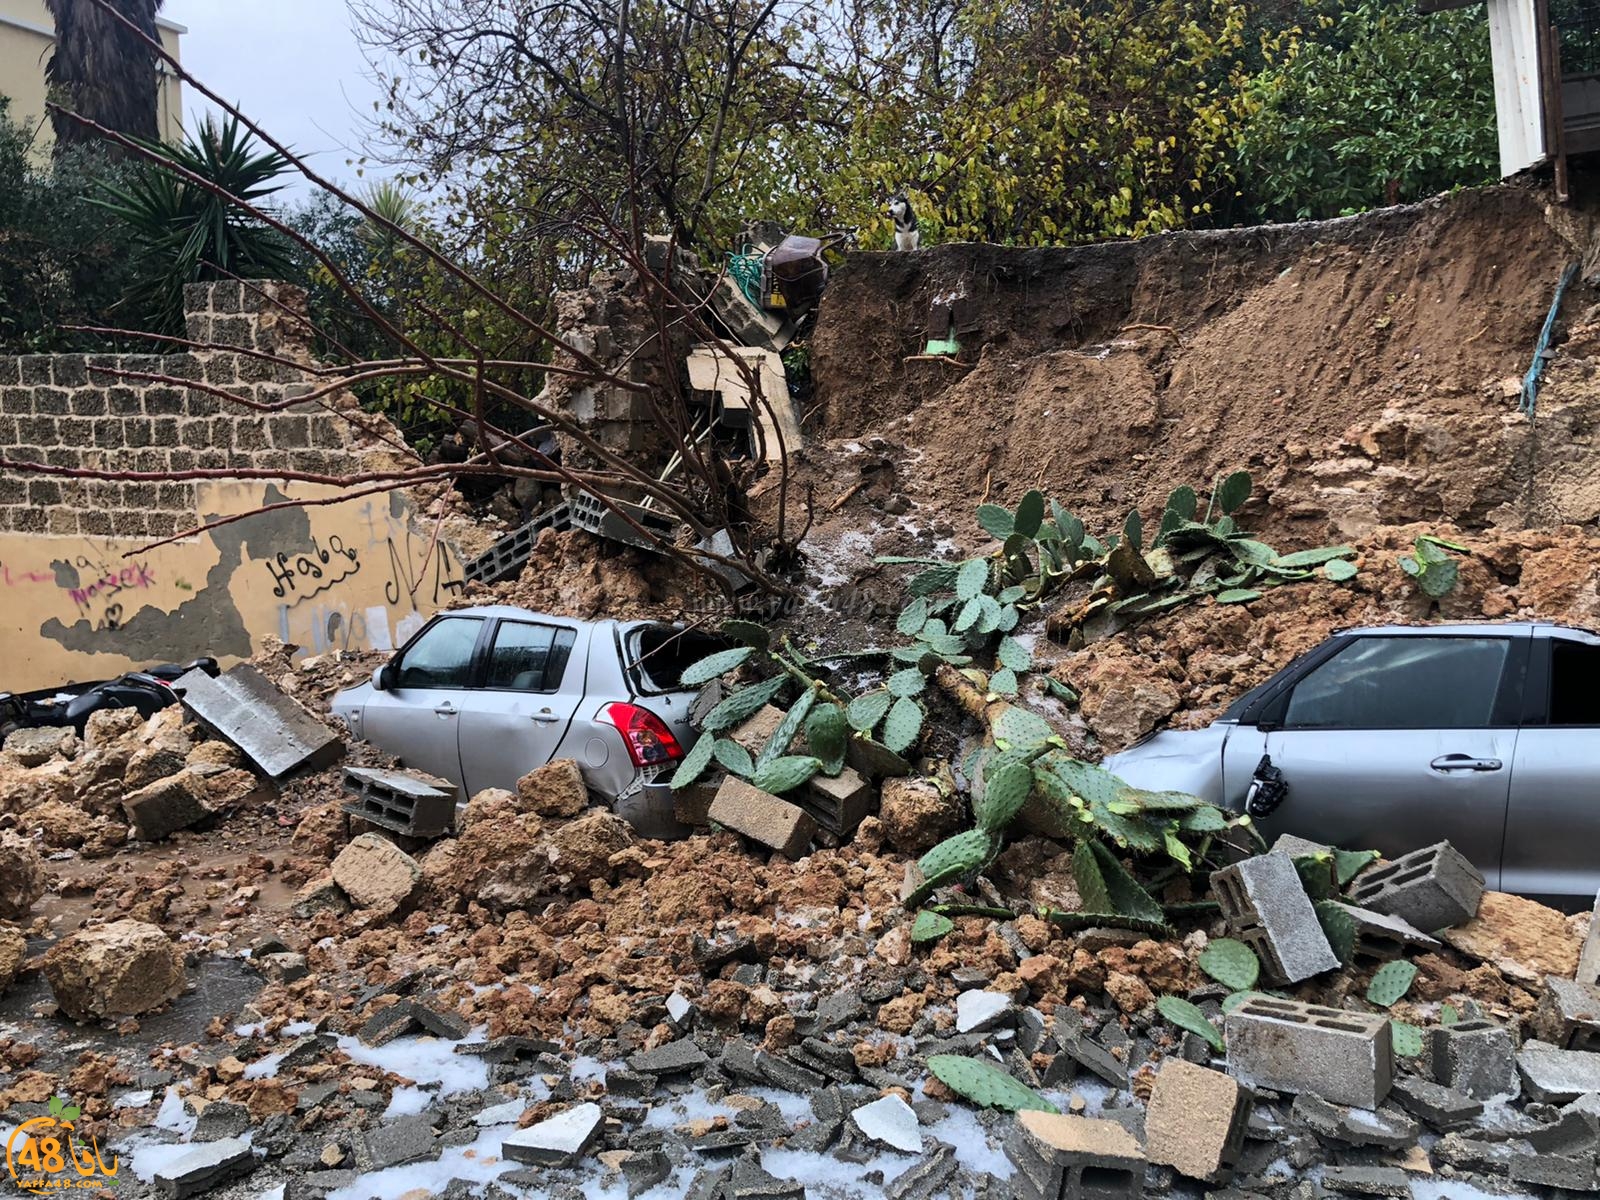   فيديو: أضرار جسيمة في الممتلكات اثر انهيار جدار بيافا بسبب تدفق مياه الأمطار